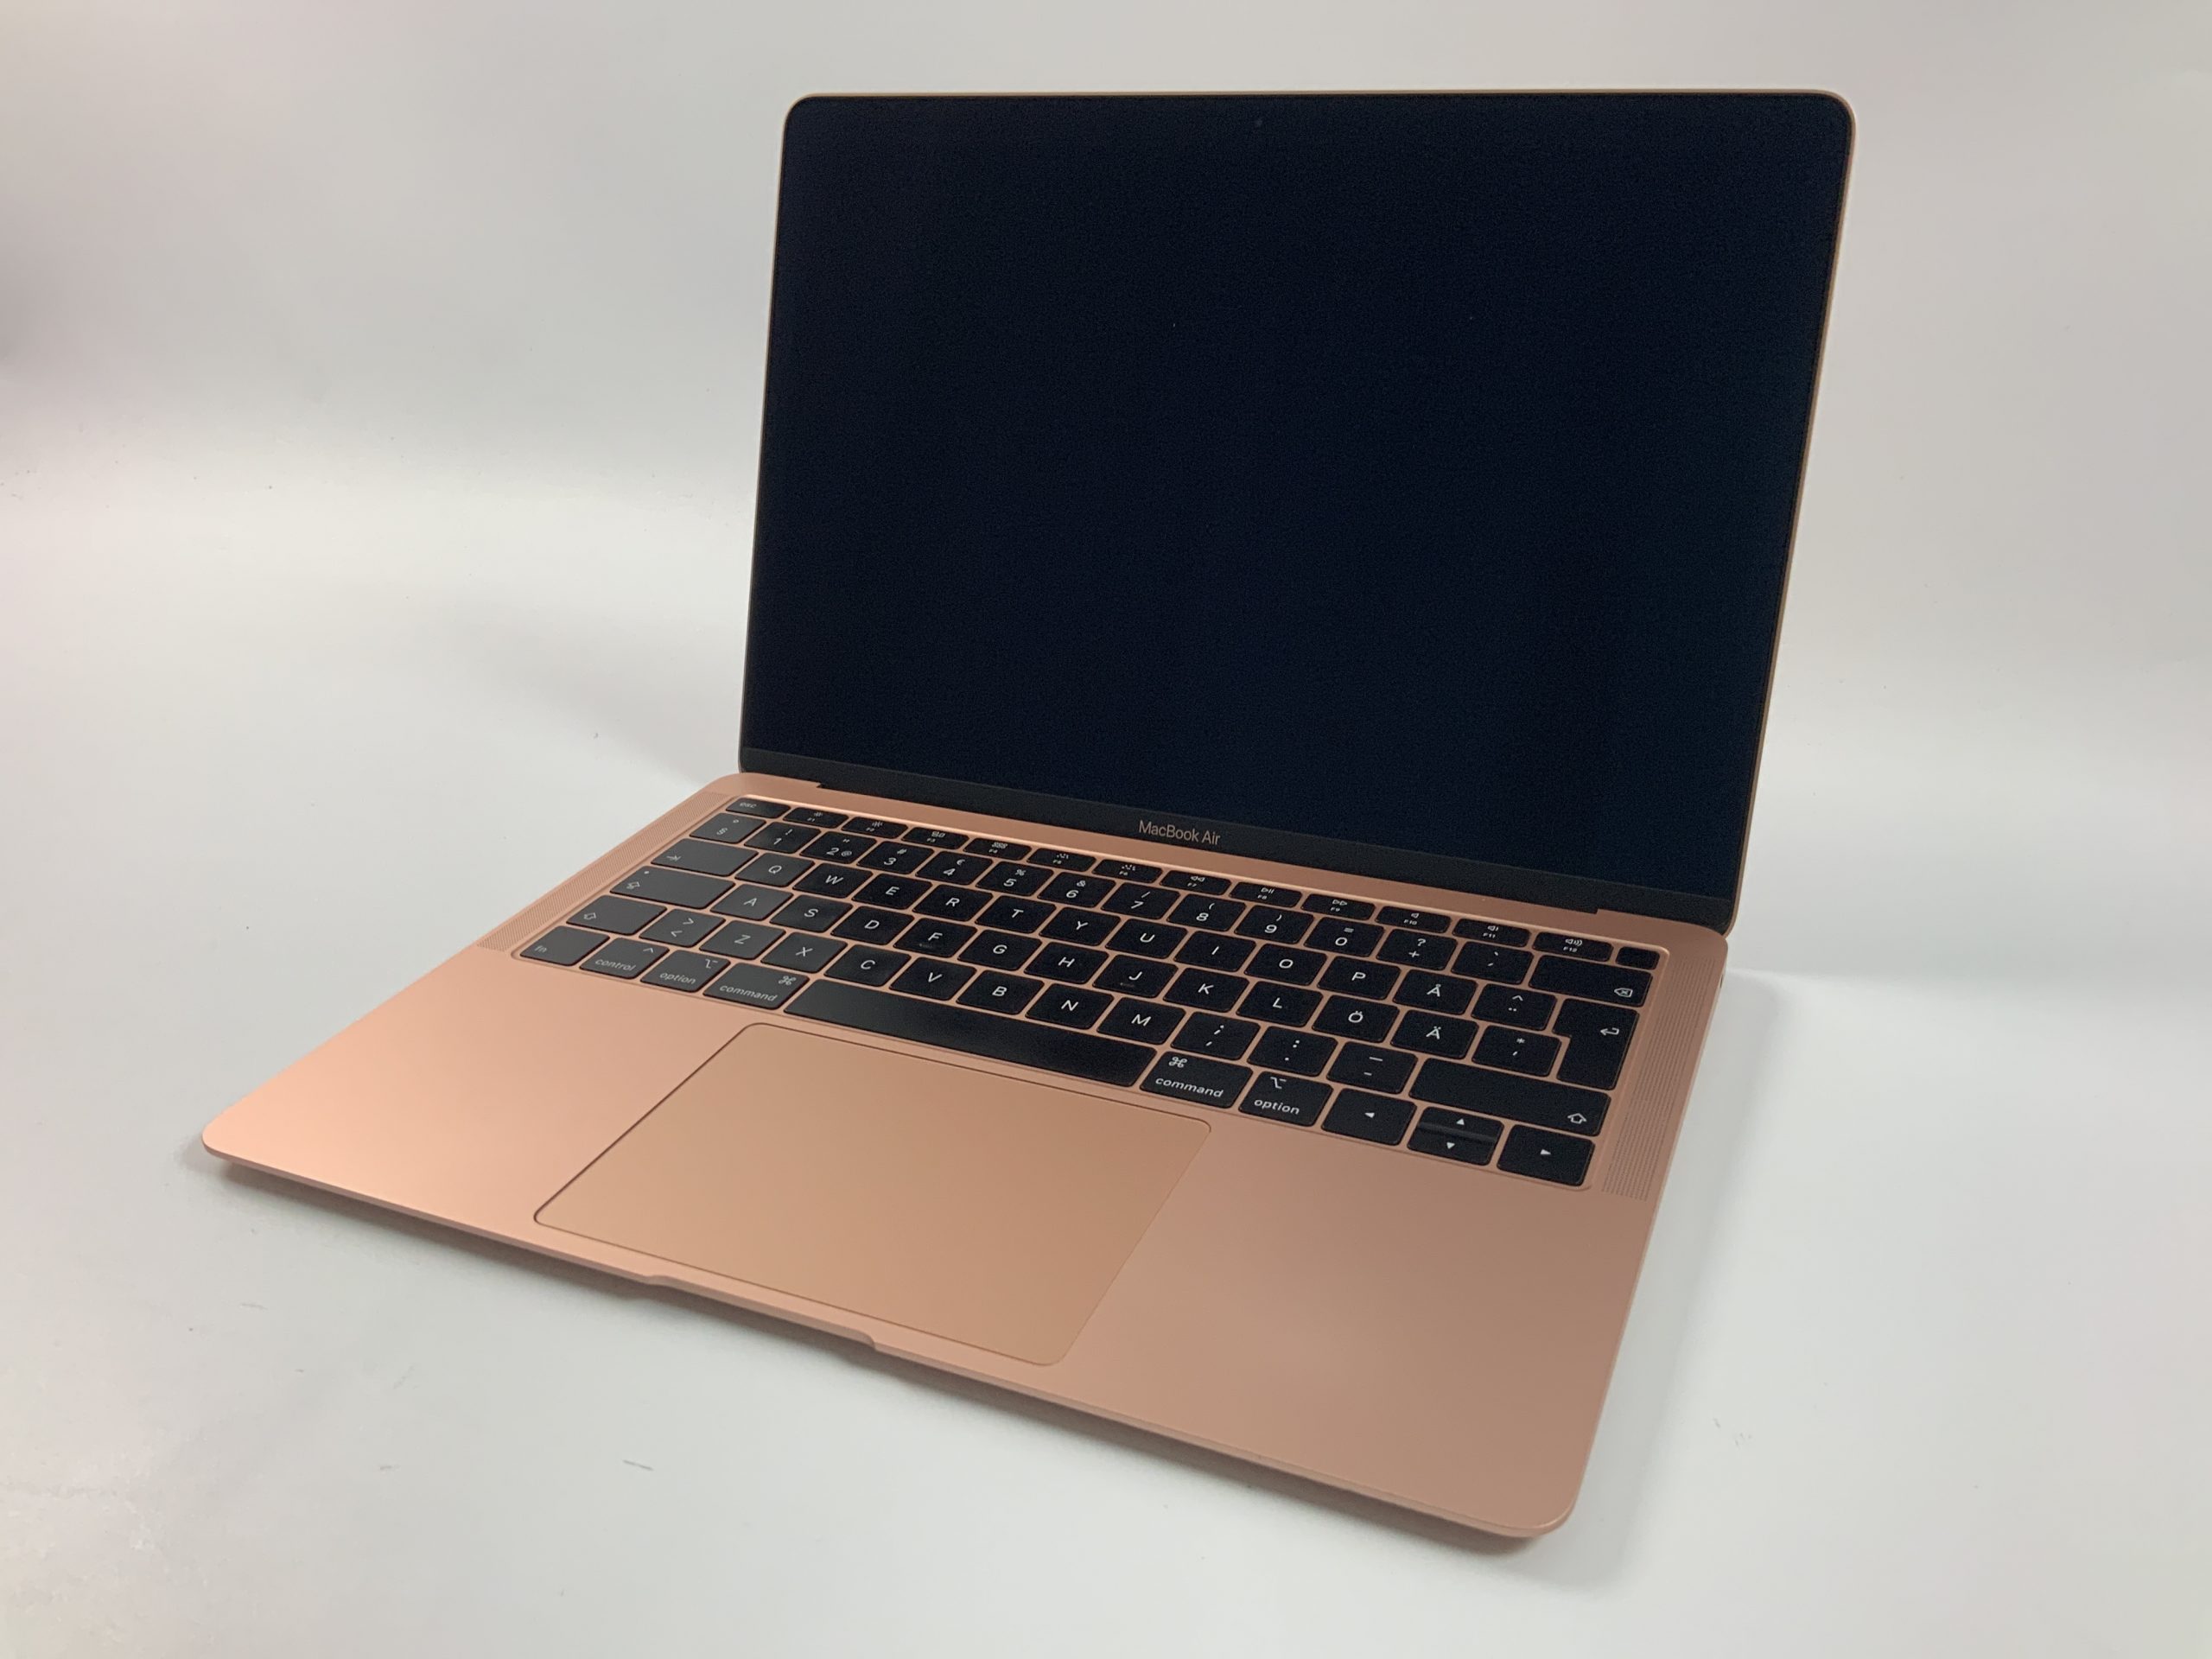 MacBook Air 13" Mid 2019 (Intel Core i5 1.6 GHz 16 GB RAM 256 GB SSD), Gold, Intel Core i5 1.6 GHz, 16 GB RAM, 256 GB SSD, imagen 1